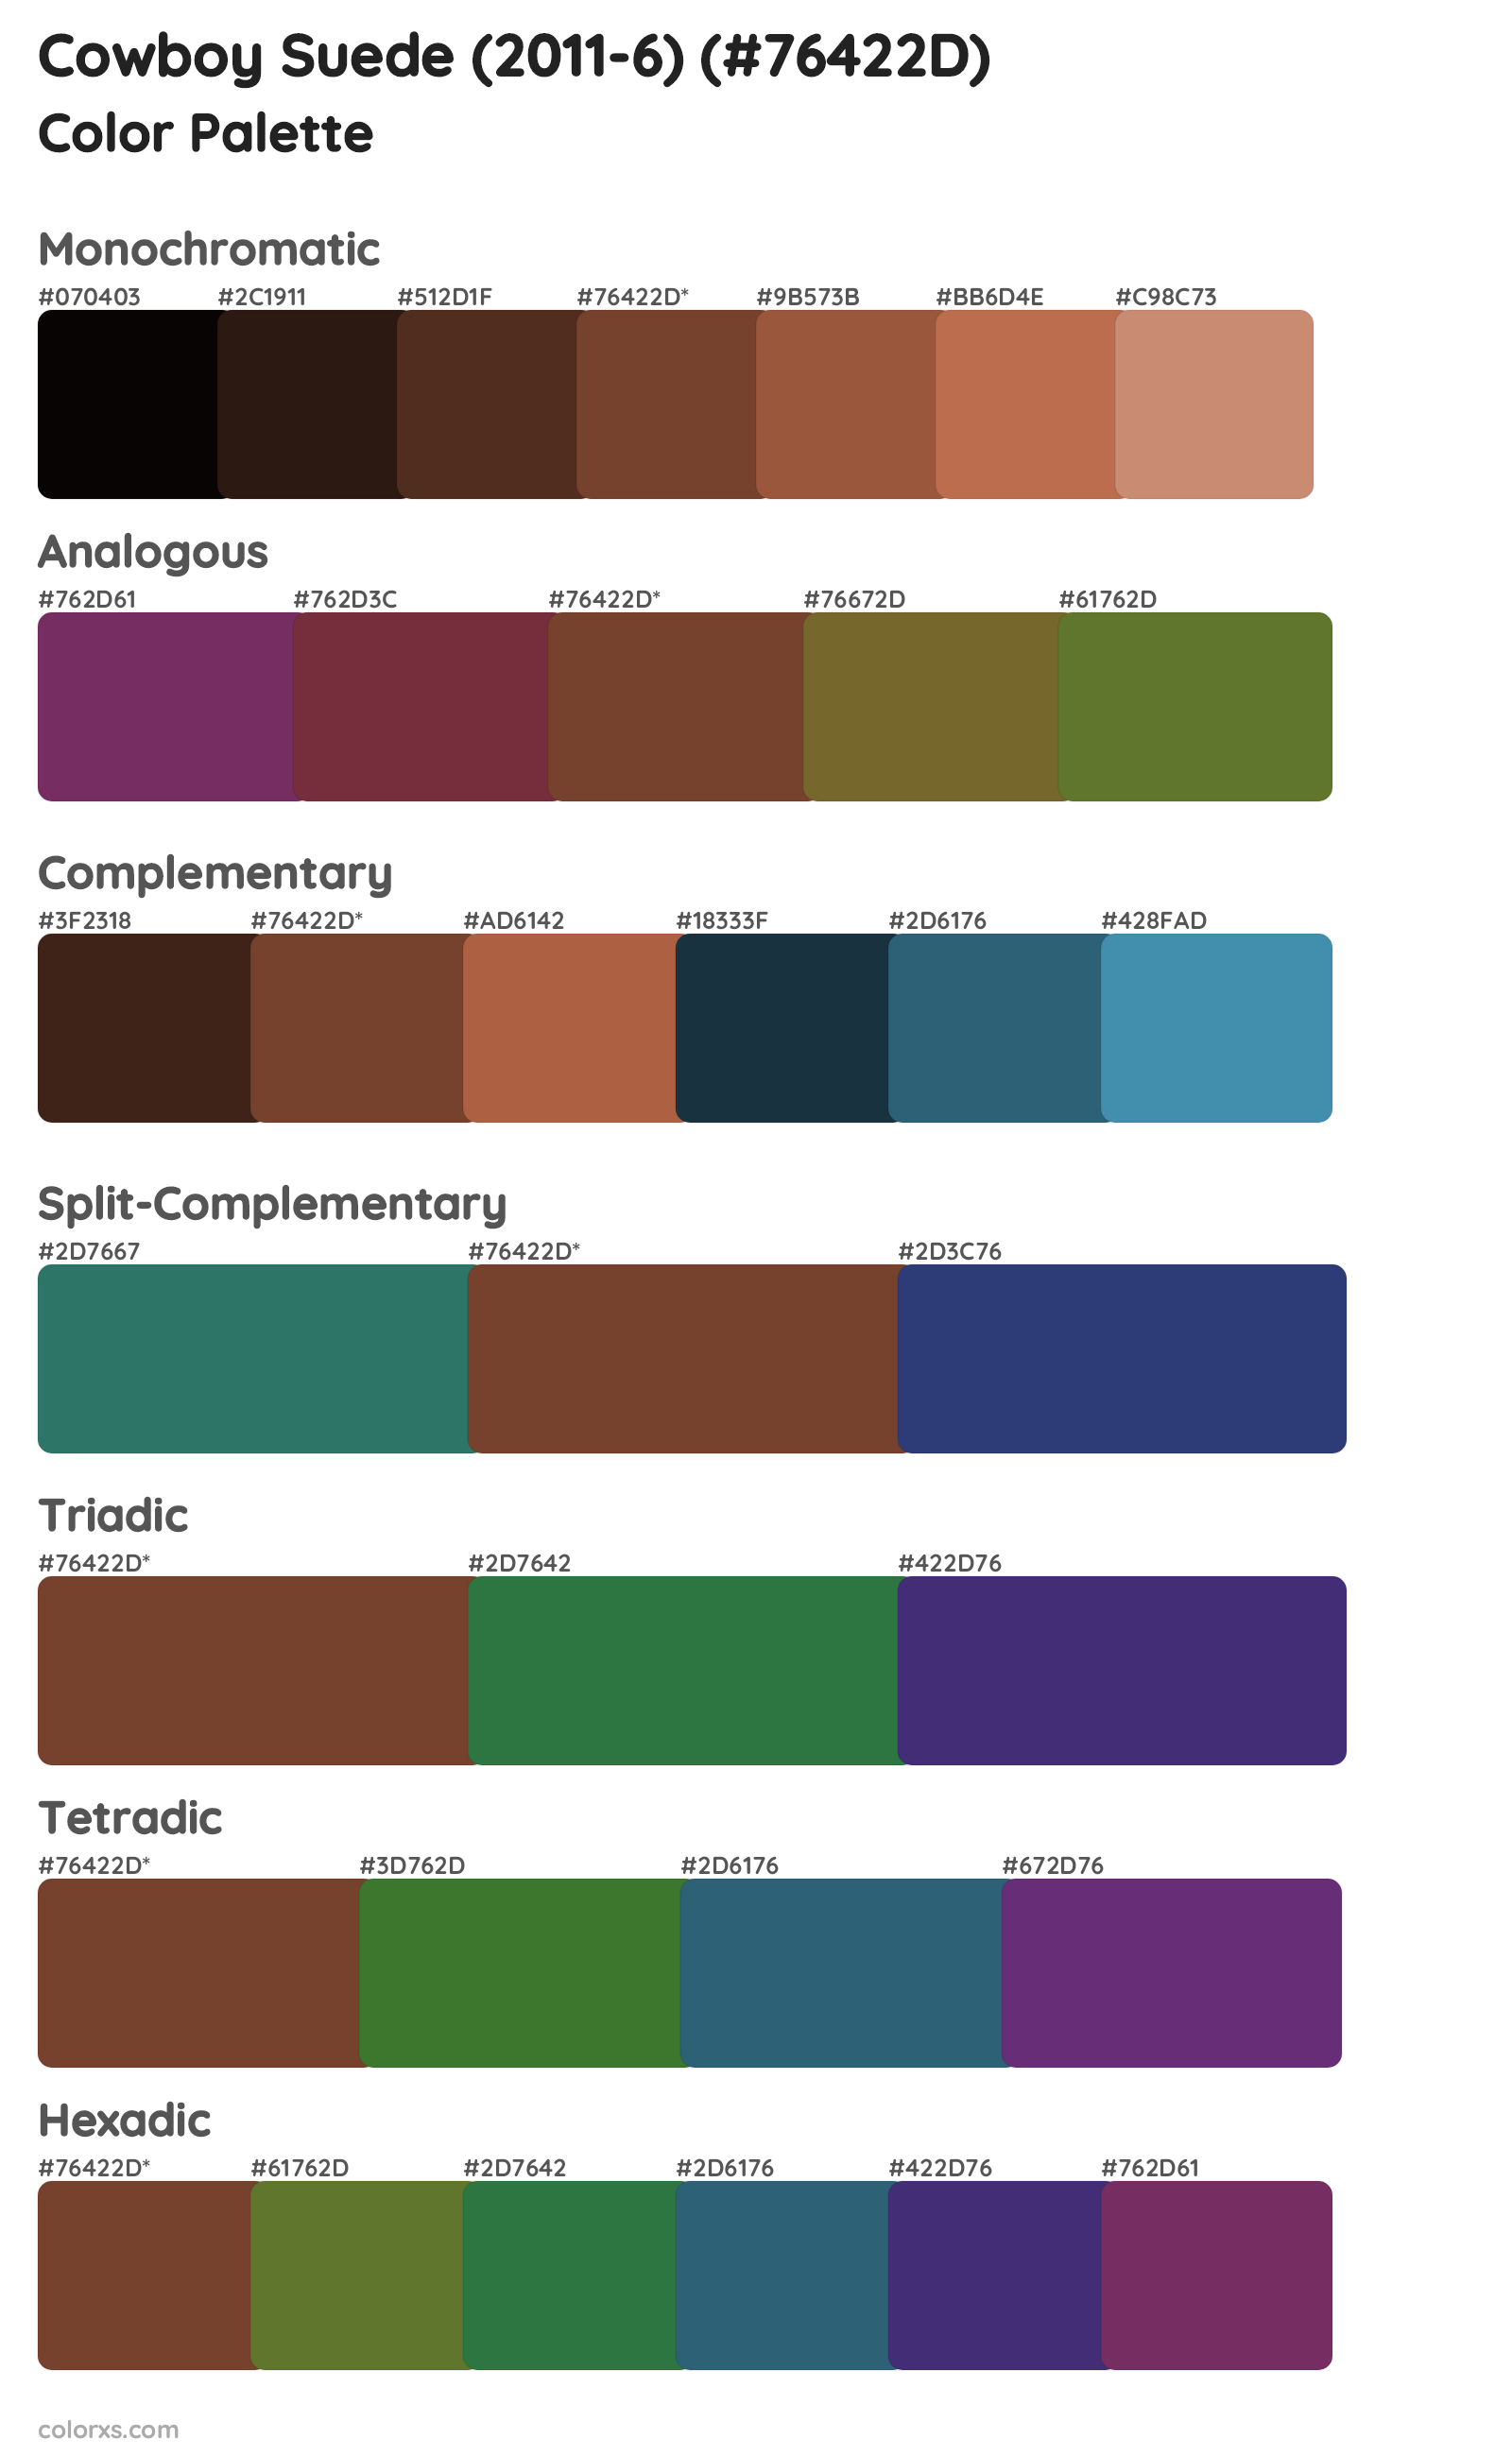 Cowboy Suede (2011-6) Color Scheme Palettes